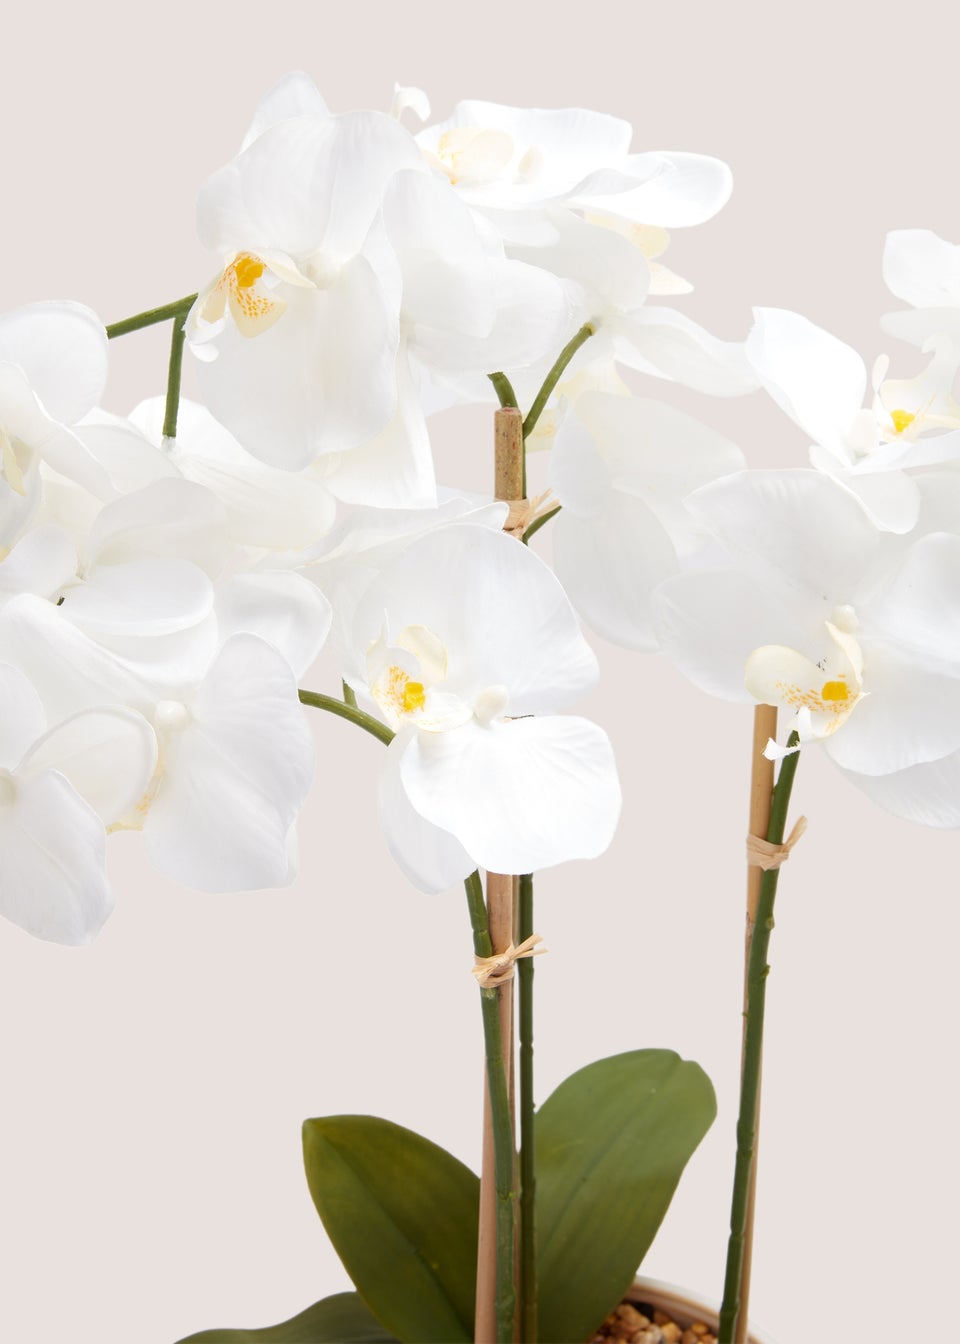 Cottage Orchid In Cream Embossed Pot (55cm x 42cm x 18cm)